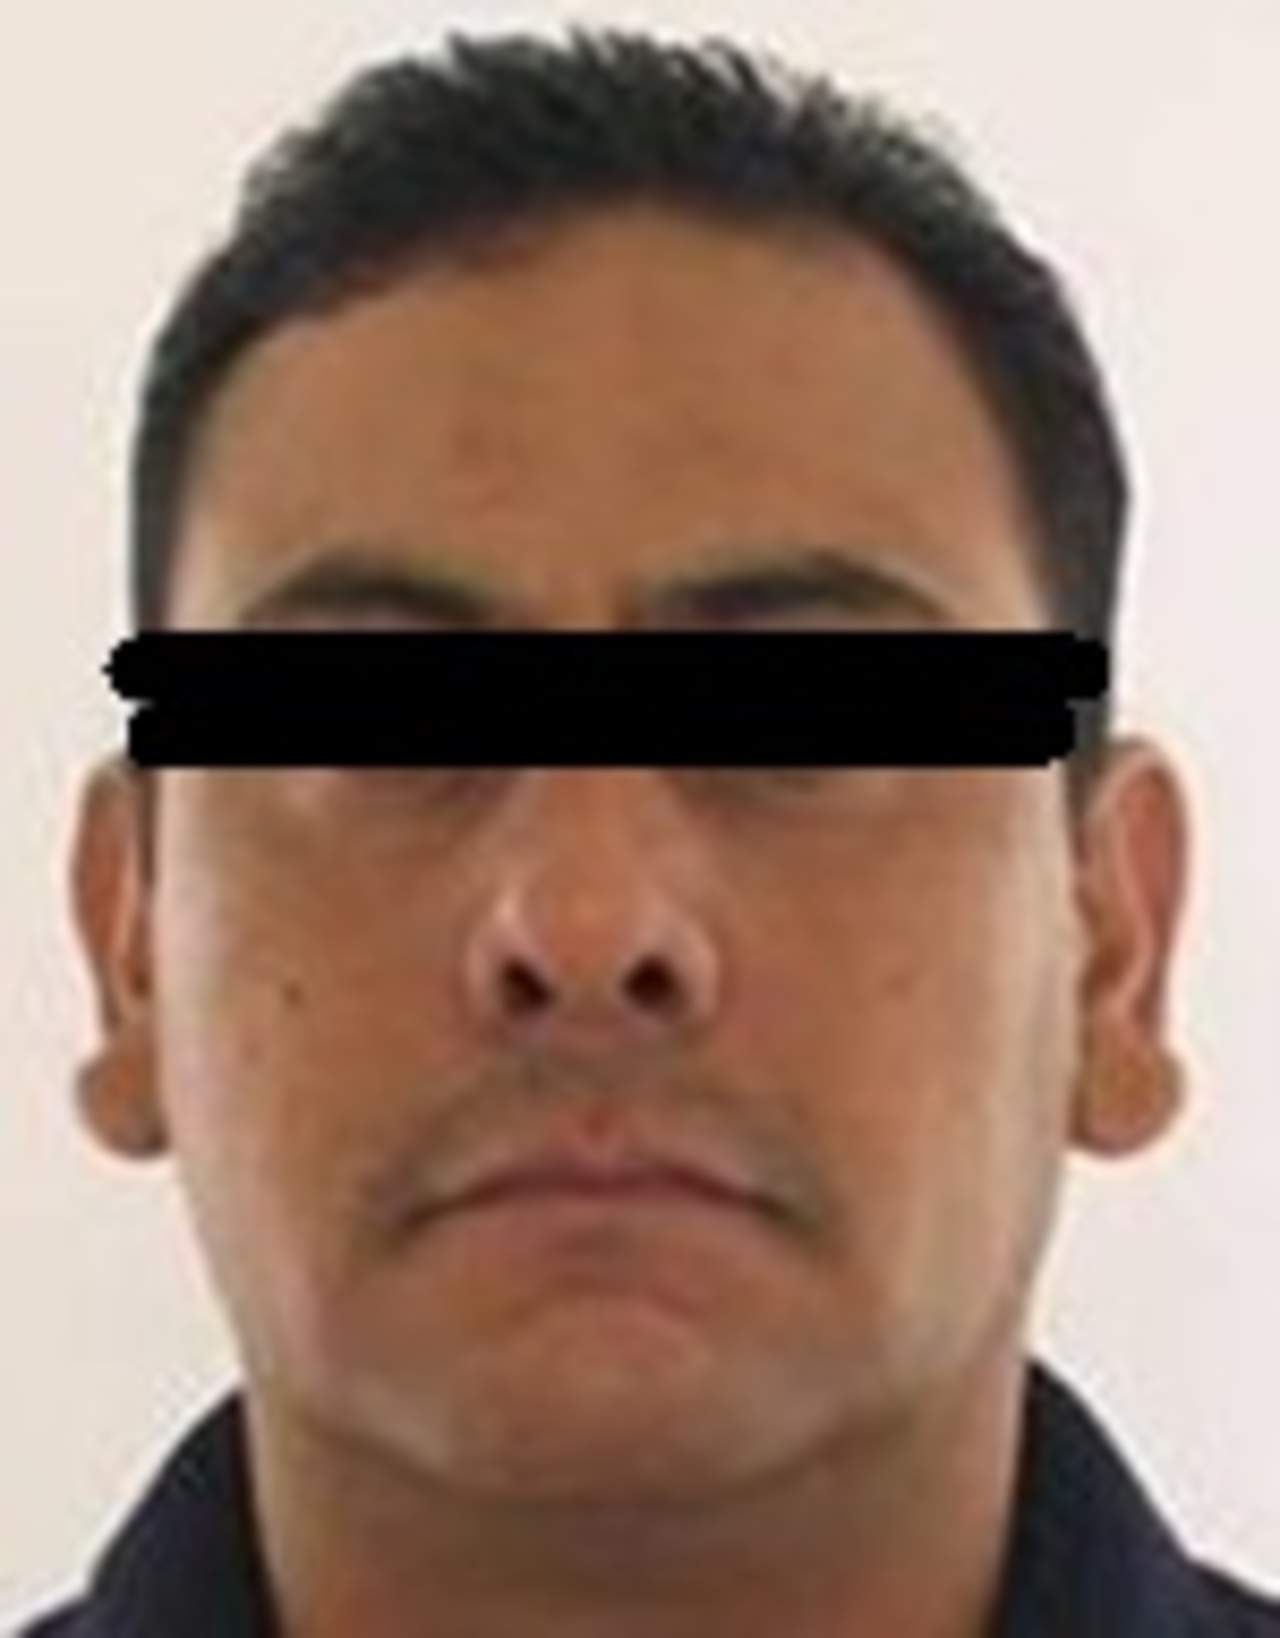 México extradita a presunto miembro de cártel a Estados Unidos